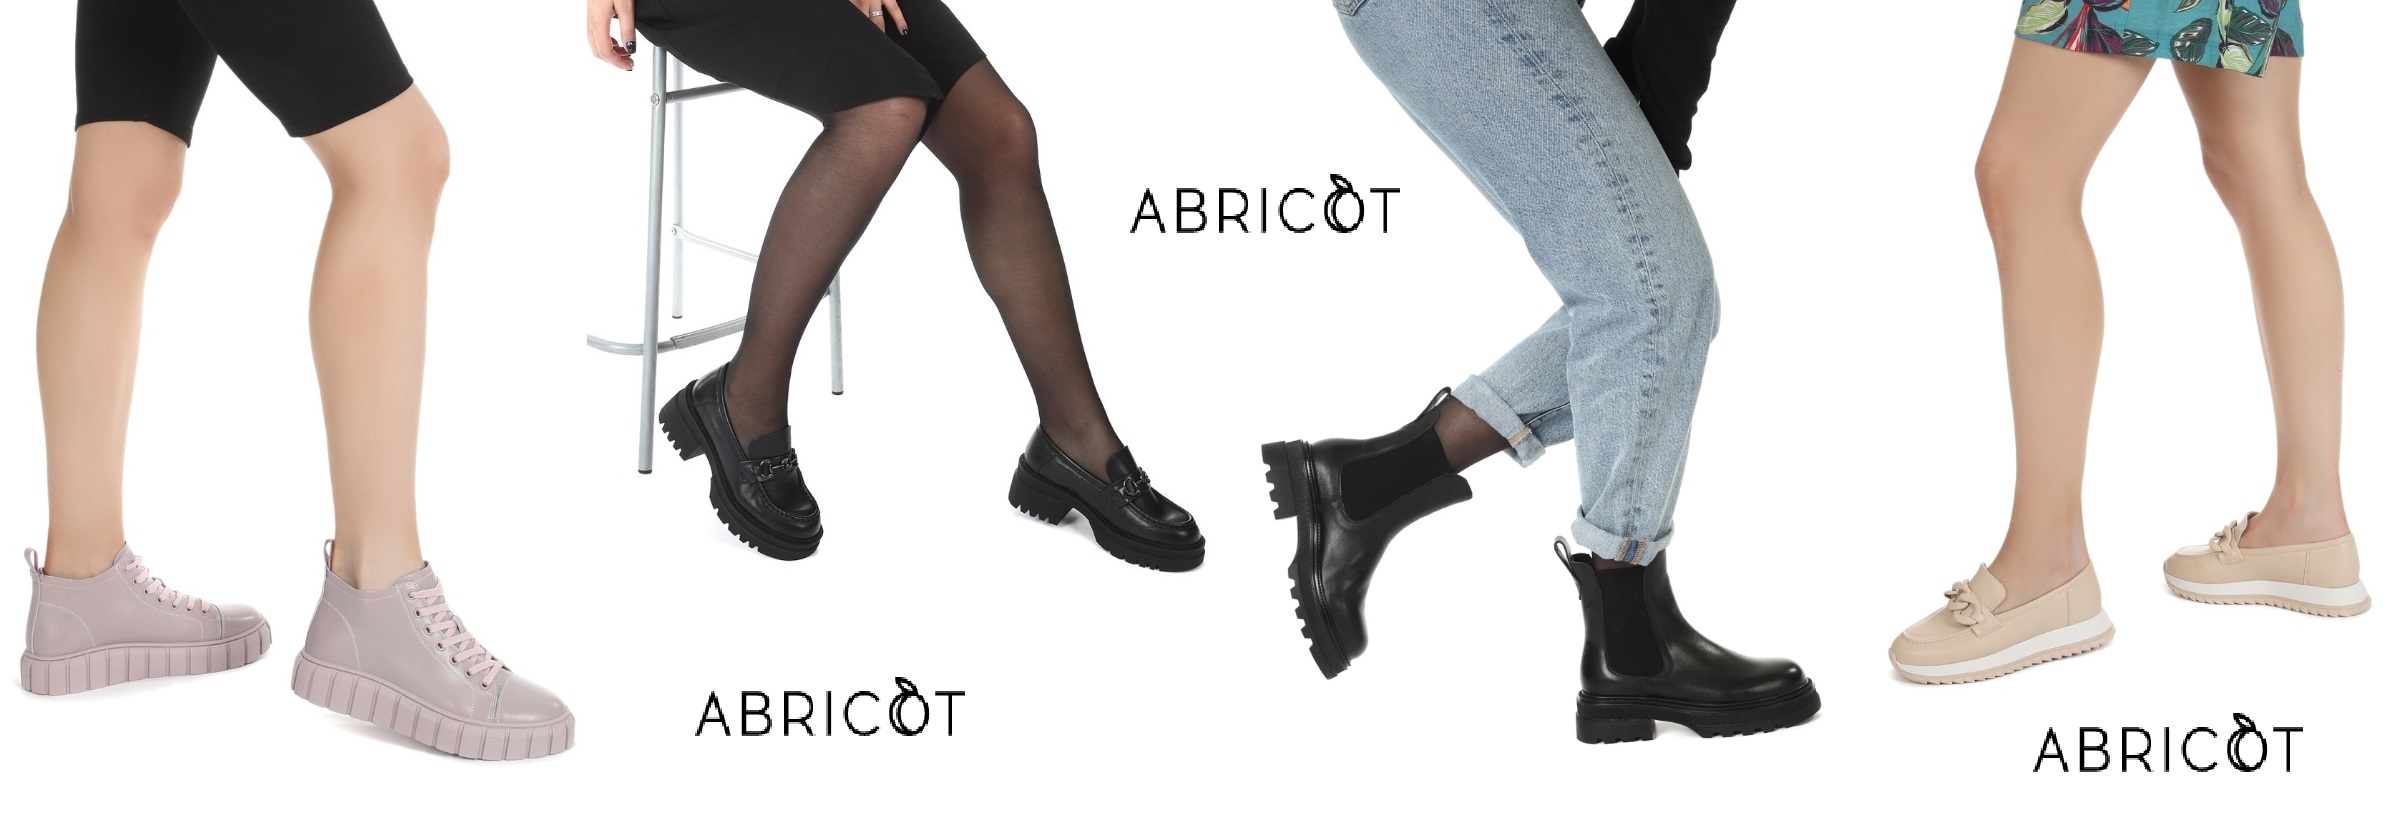 Долгожданный сбор. Новая коллекция обуви ABRICOT. У нас самые выгодные цены!